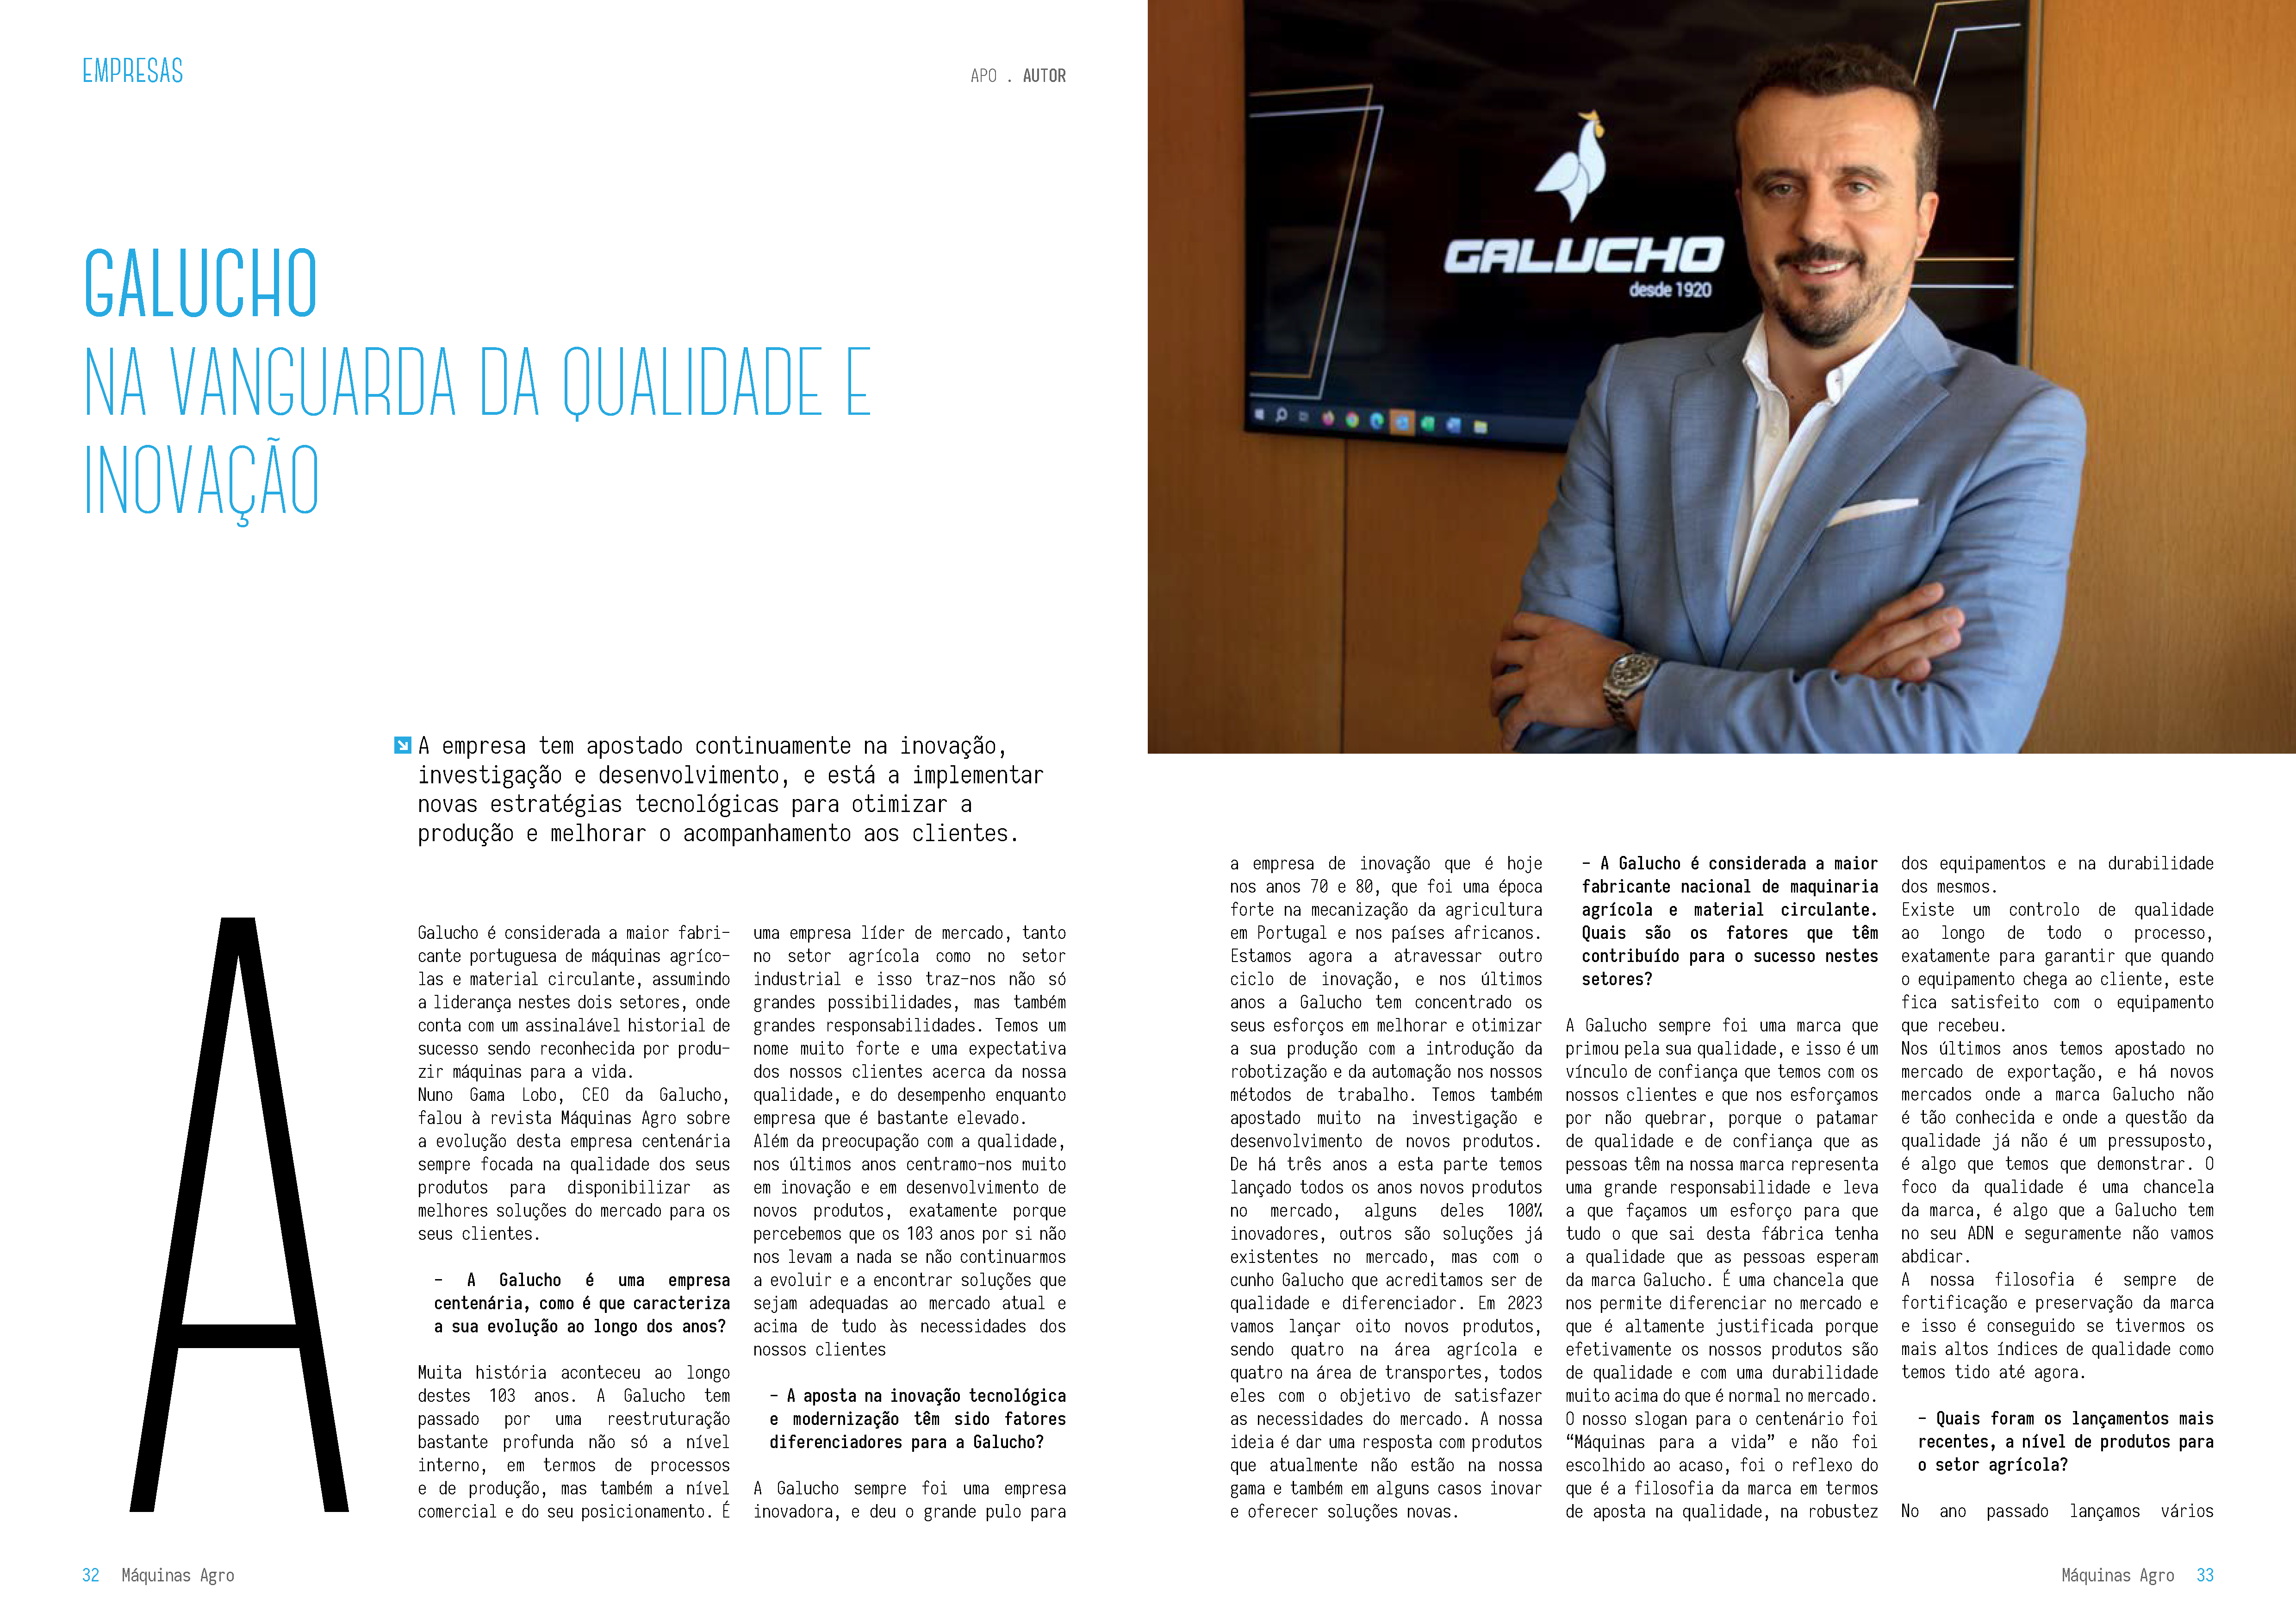 Galucho présente dans le numéro d'août/septembre du magazine Máquinas AGRO